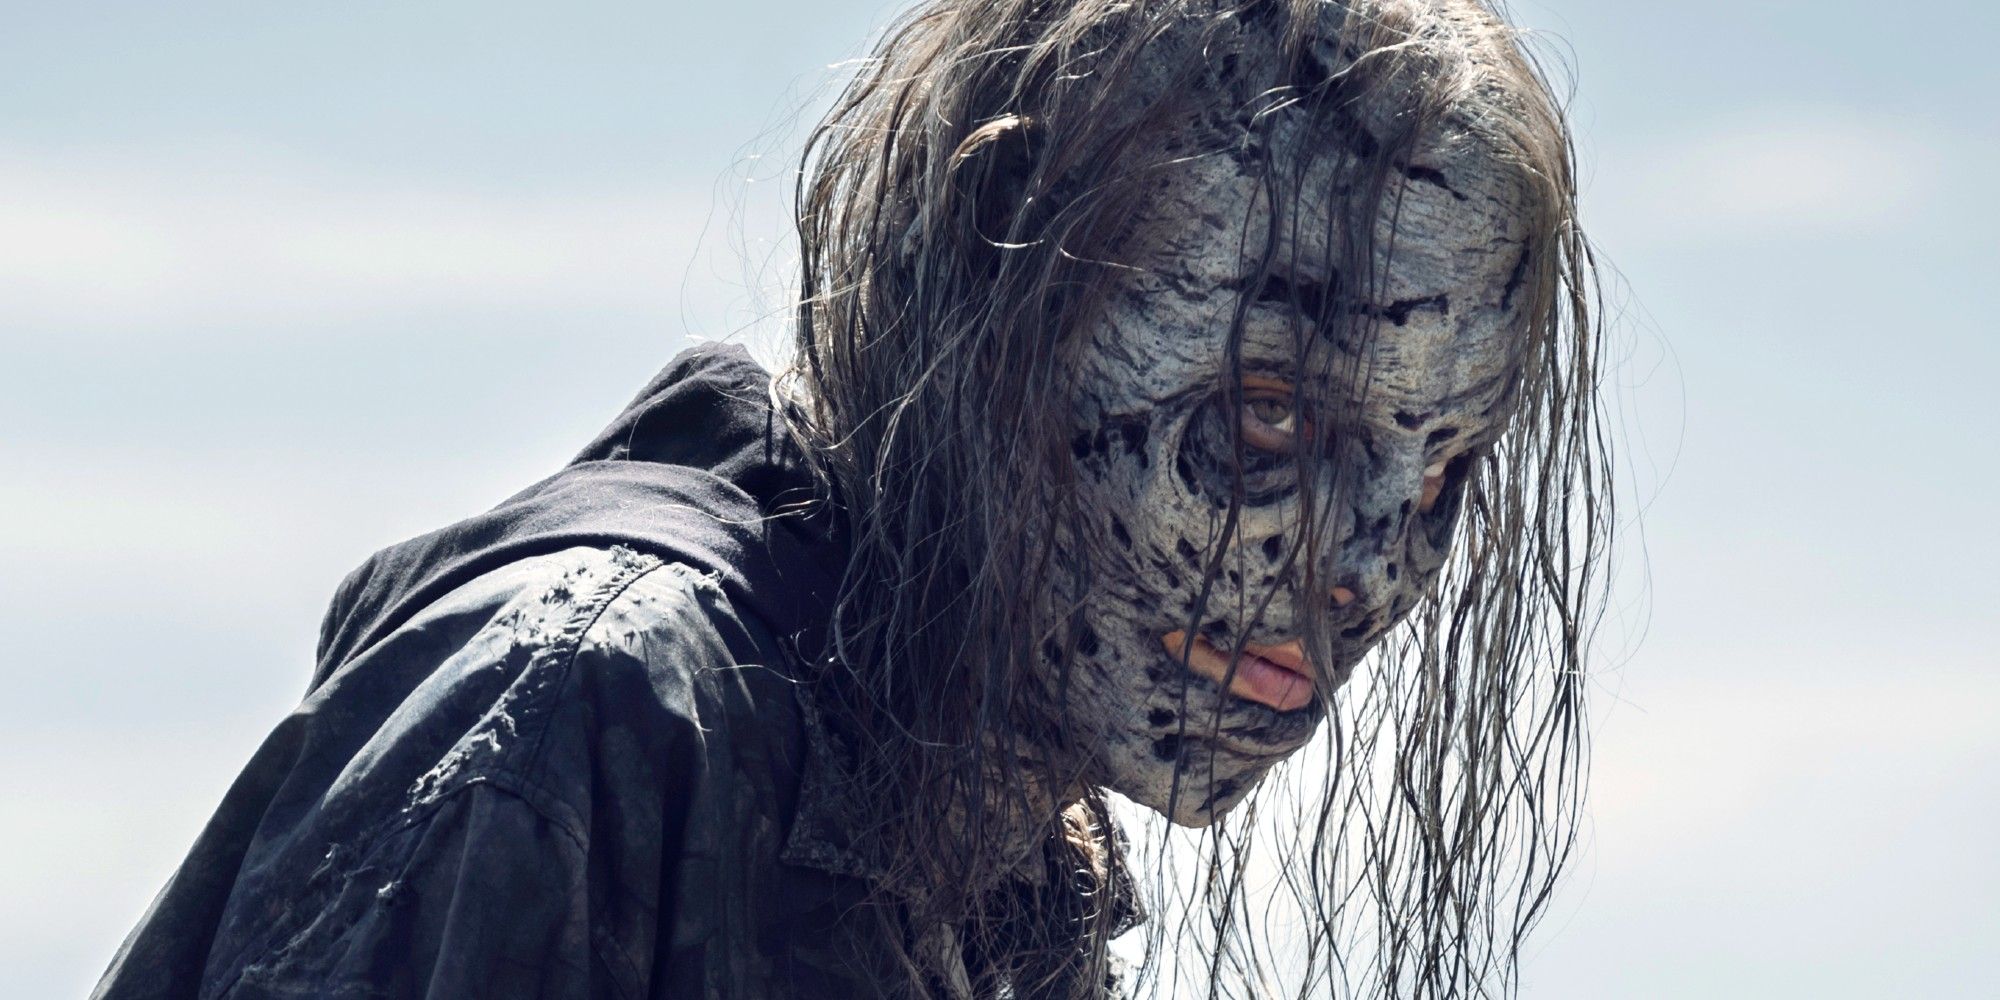 Maggie in a Whisperer mask in The Walking Dead season 11